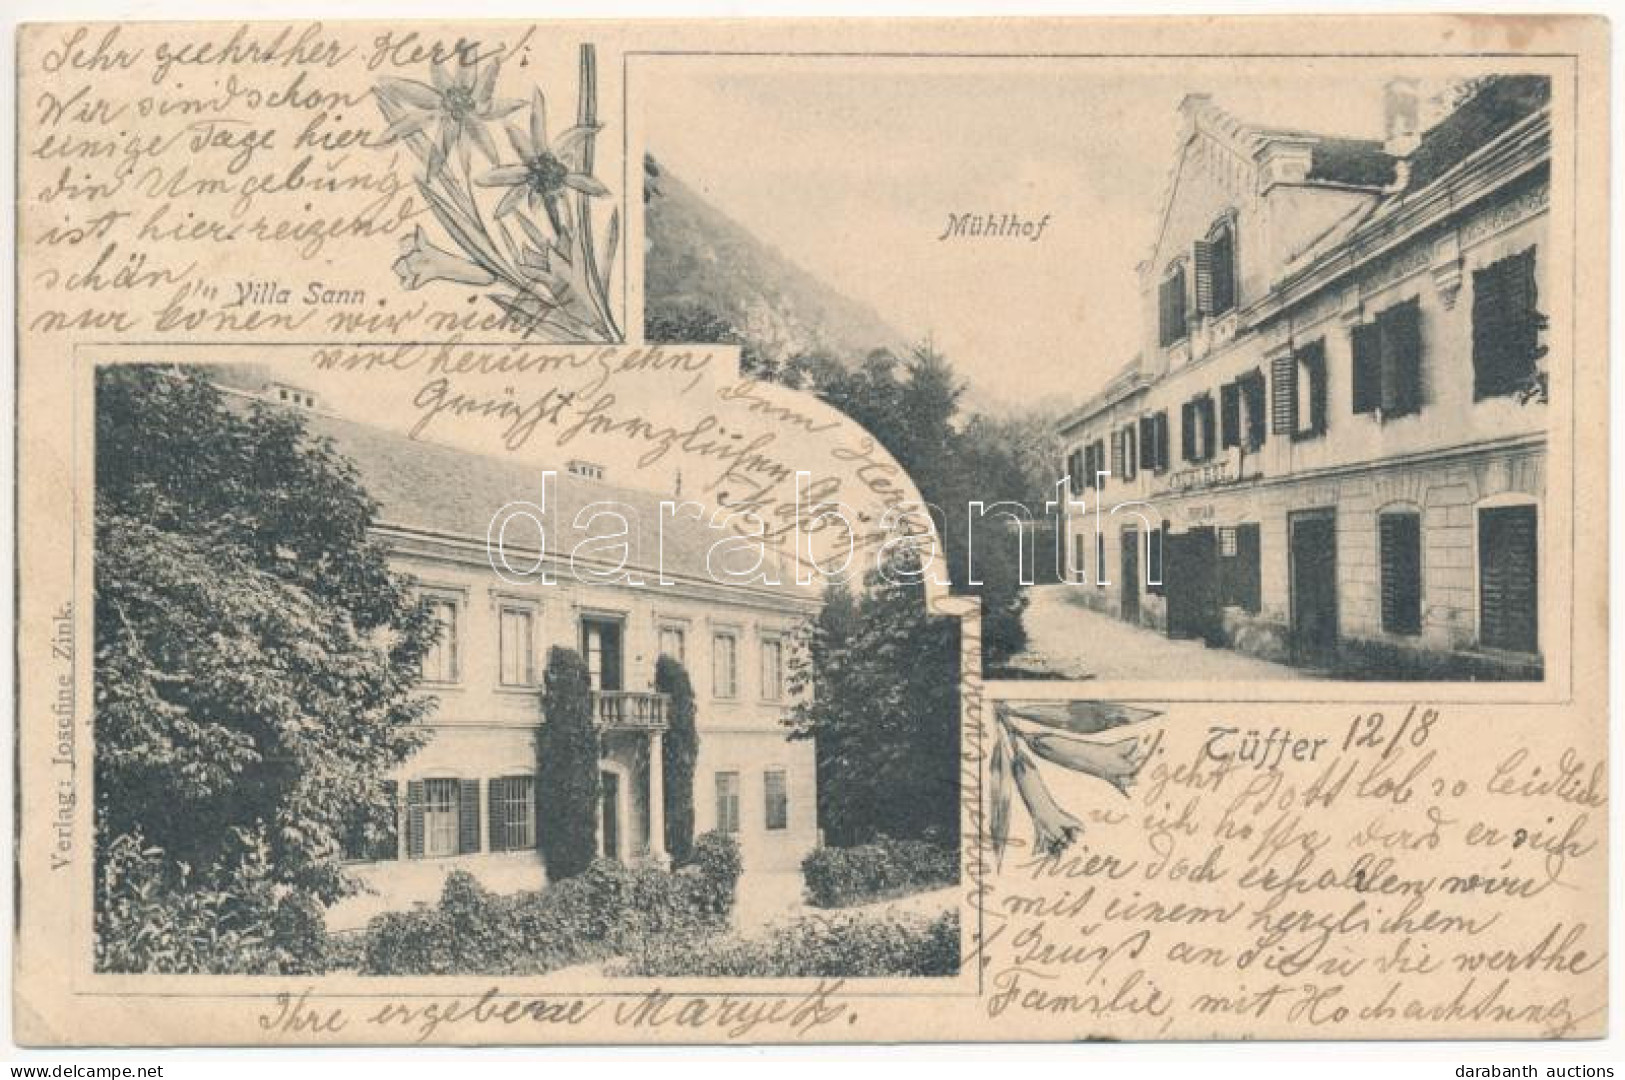 T2/T3 1908 Lasko, Tüffer; Villa Sann, Mühlhof Hotel. Verlag Josefine Zink, Art Nouveau, Floral (EK) - Unclassified